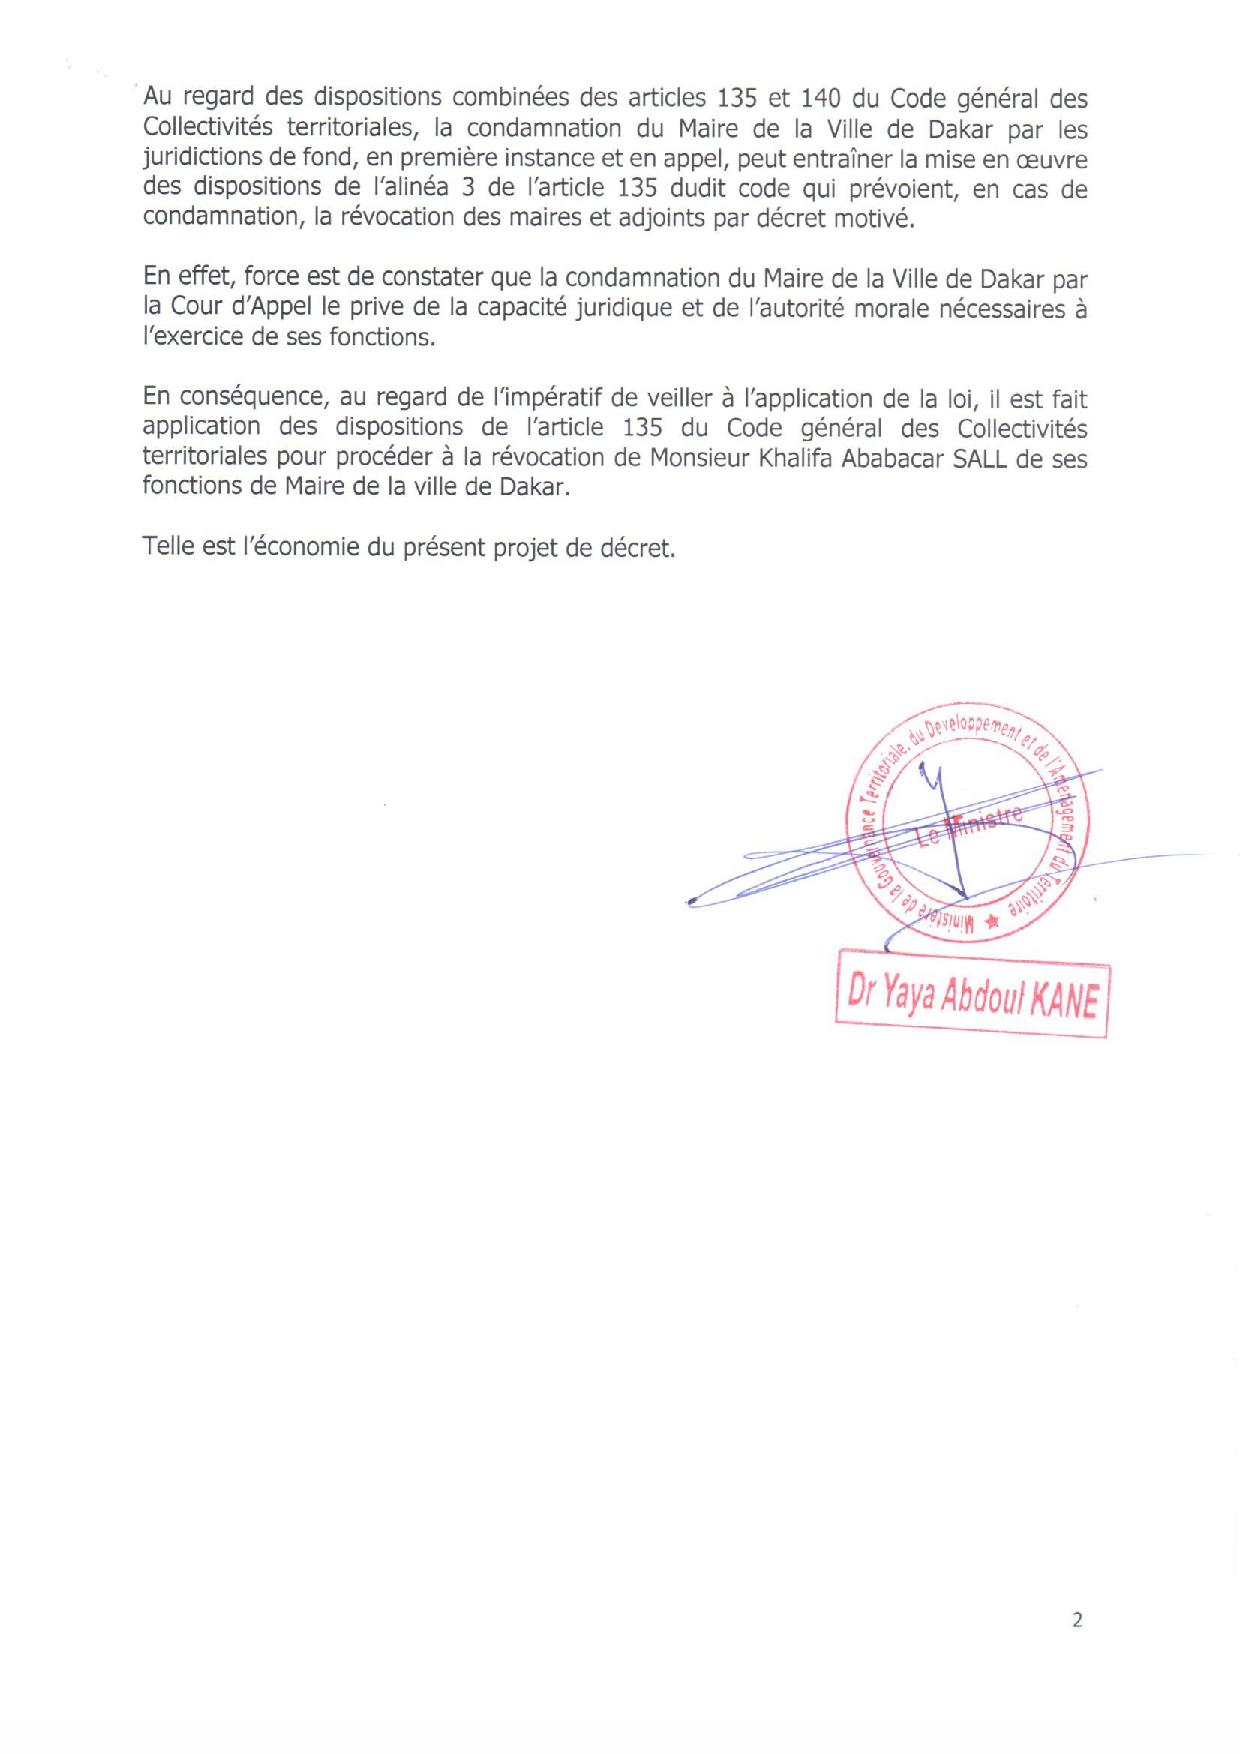 URGENT : Khalifa Sall révoqué de ses fonctions de Maire de Dakar par décret 2018-1701 (documents)